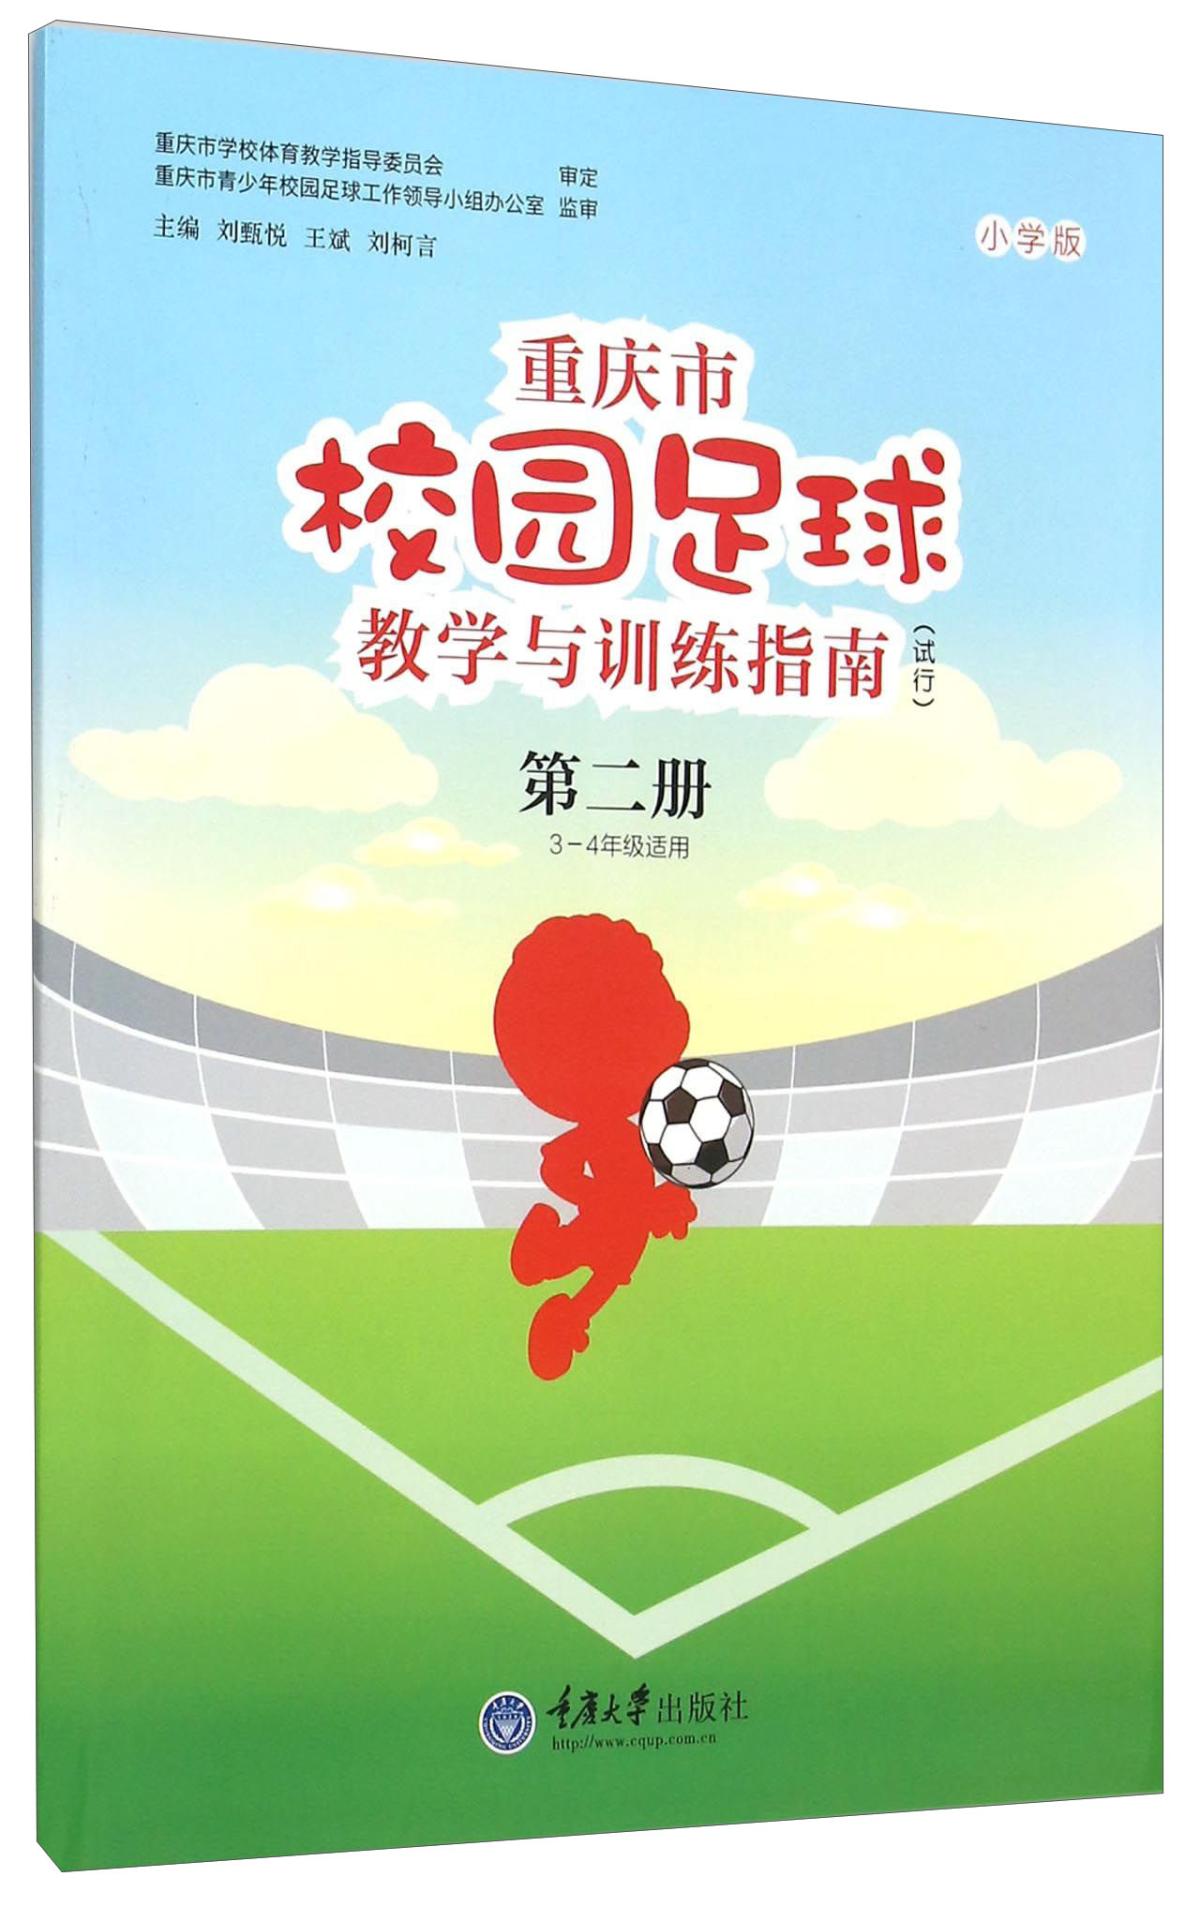 重庆市校园足球教学与训练指南（试行）第二册  3-4年级适用